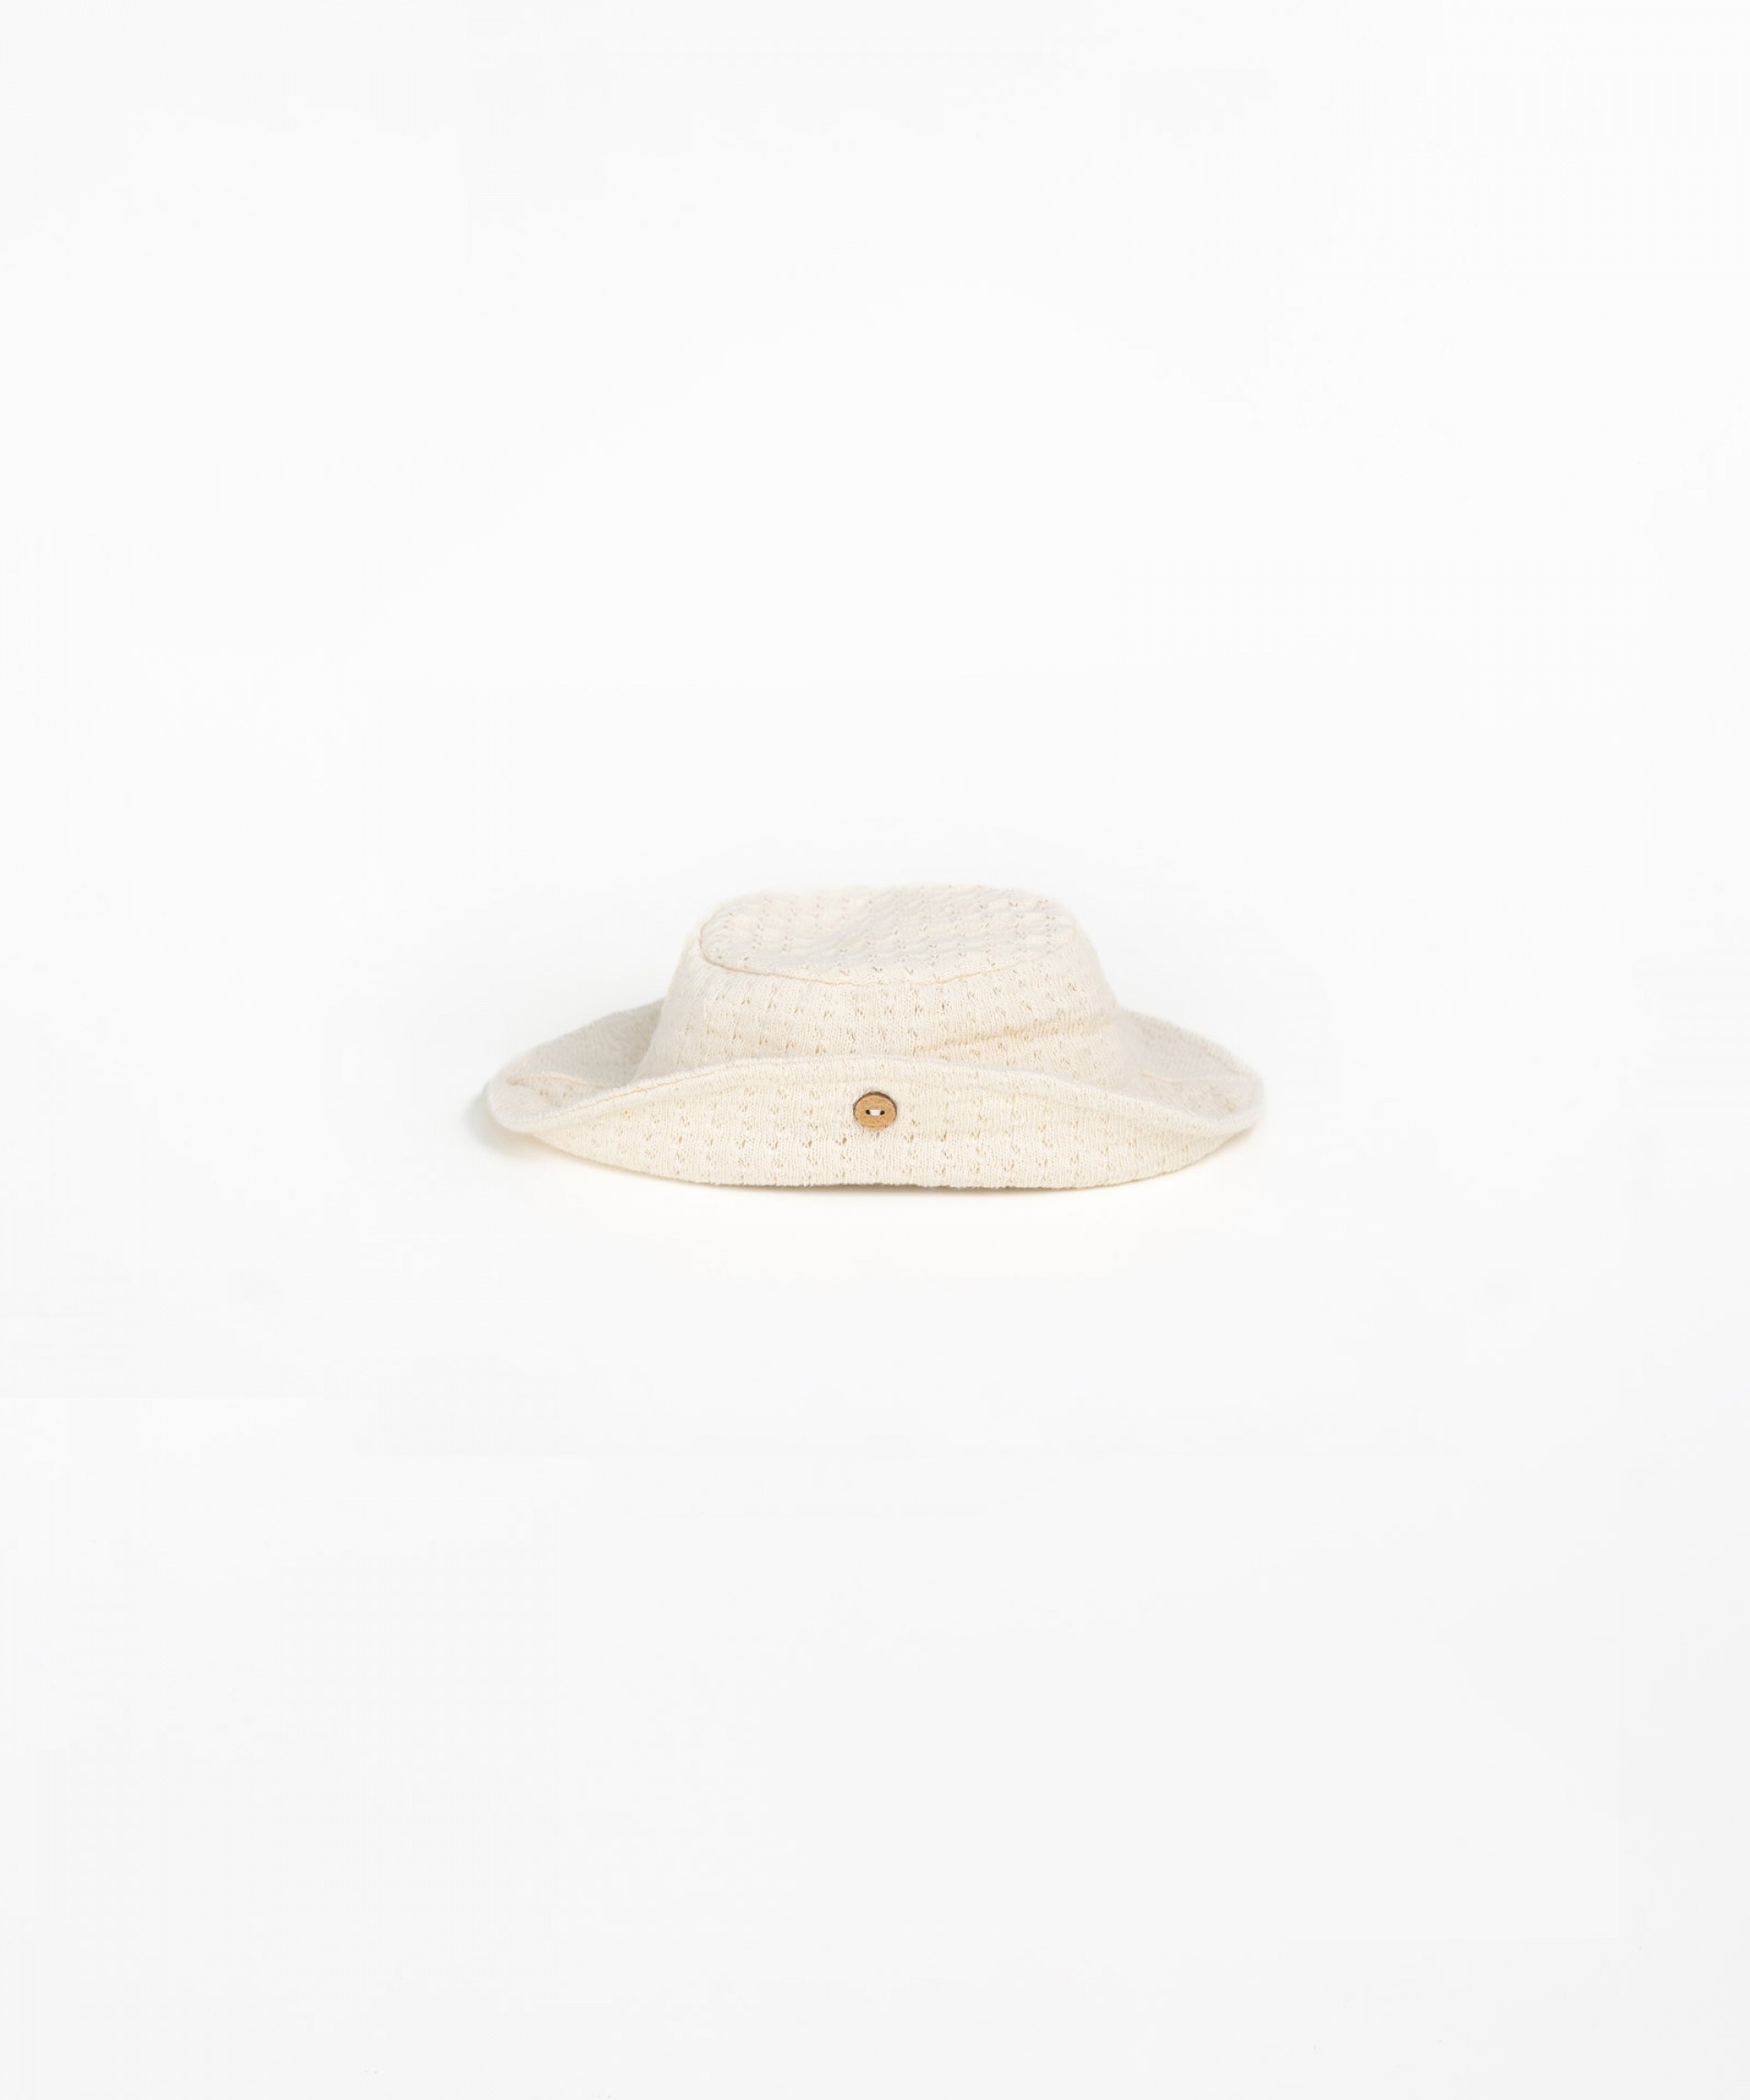 Sombrero con ala | Textile Art